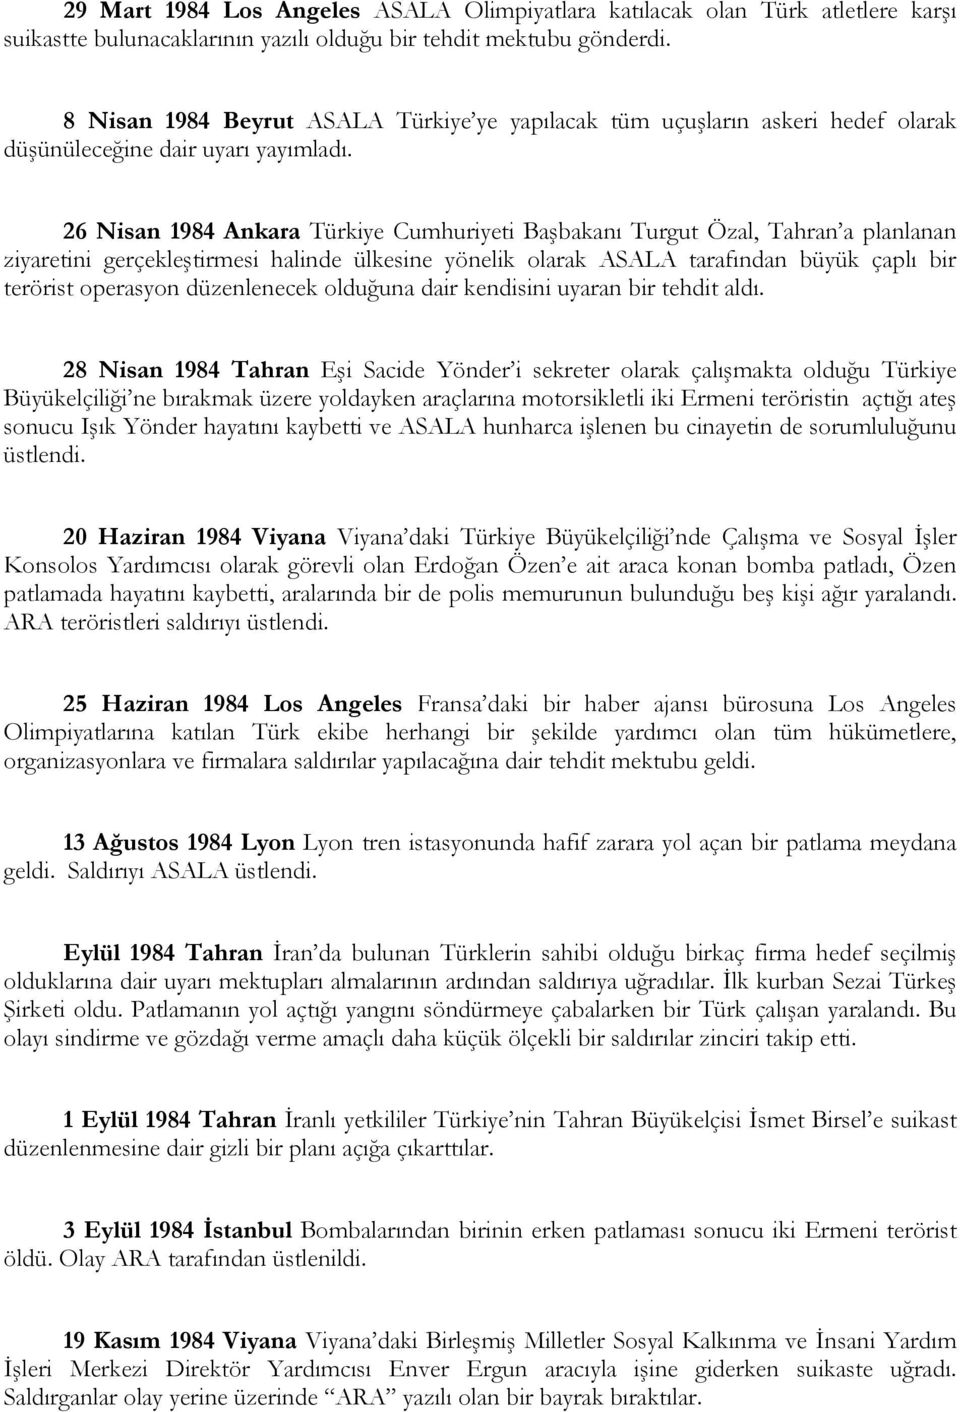 26 Nisan 1984 Ankara Türkiye Cumhuriyeti Başbakanı Turgut Özal, Tahran a planlanan ziyaretini gerçekleştirmesi halinde ülkesine yönelik olarak ASALA tarafından büyük çaplı bir terörist operasyon